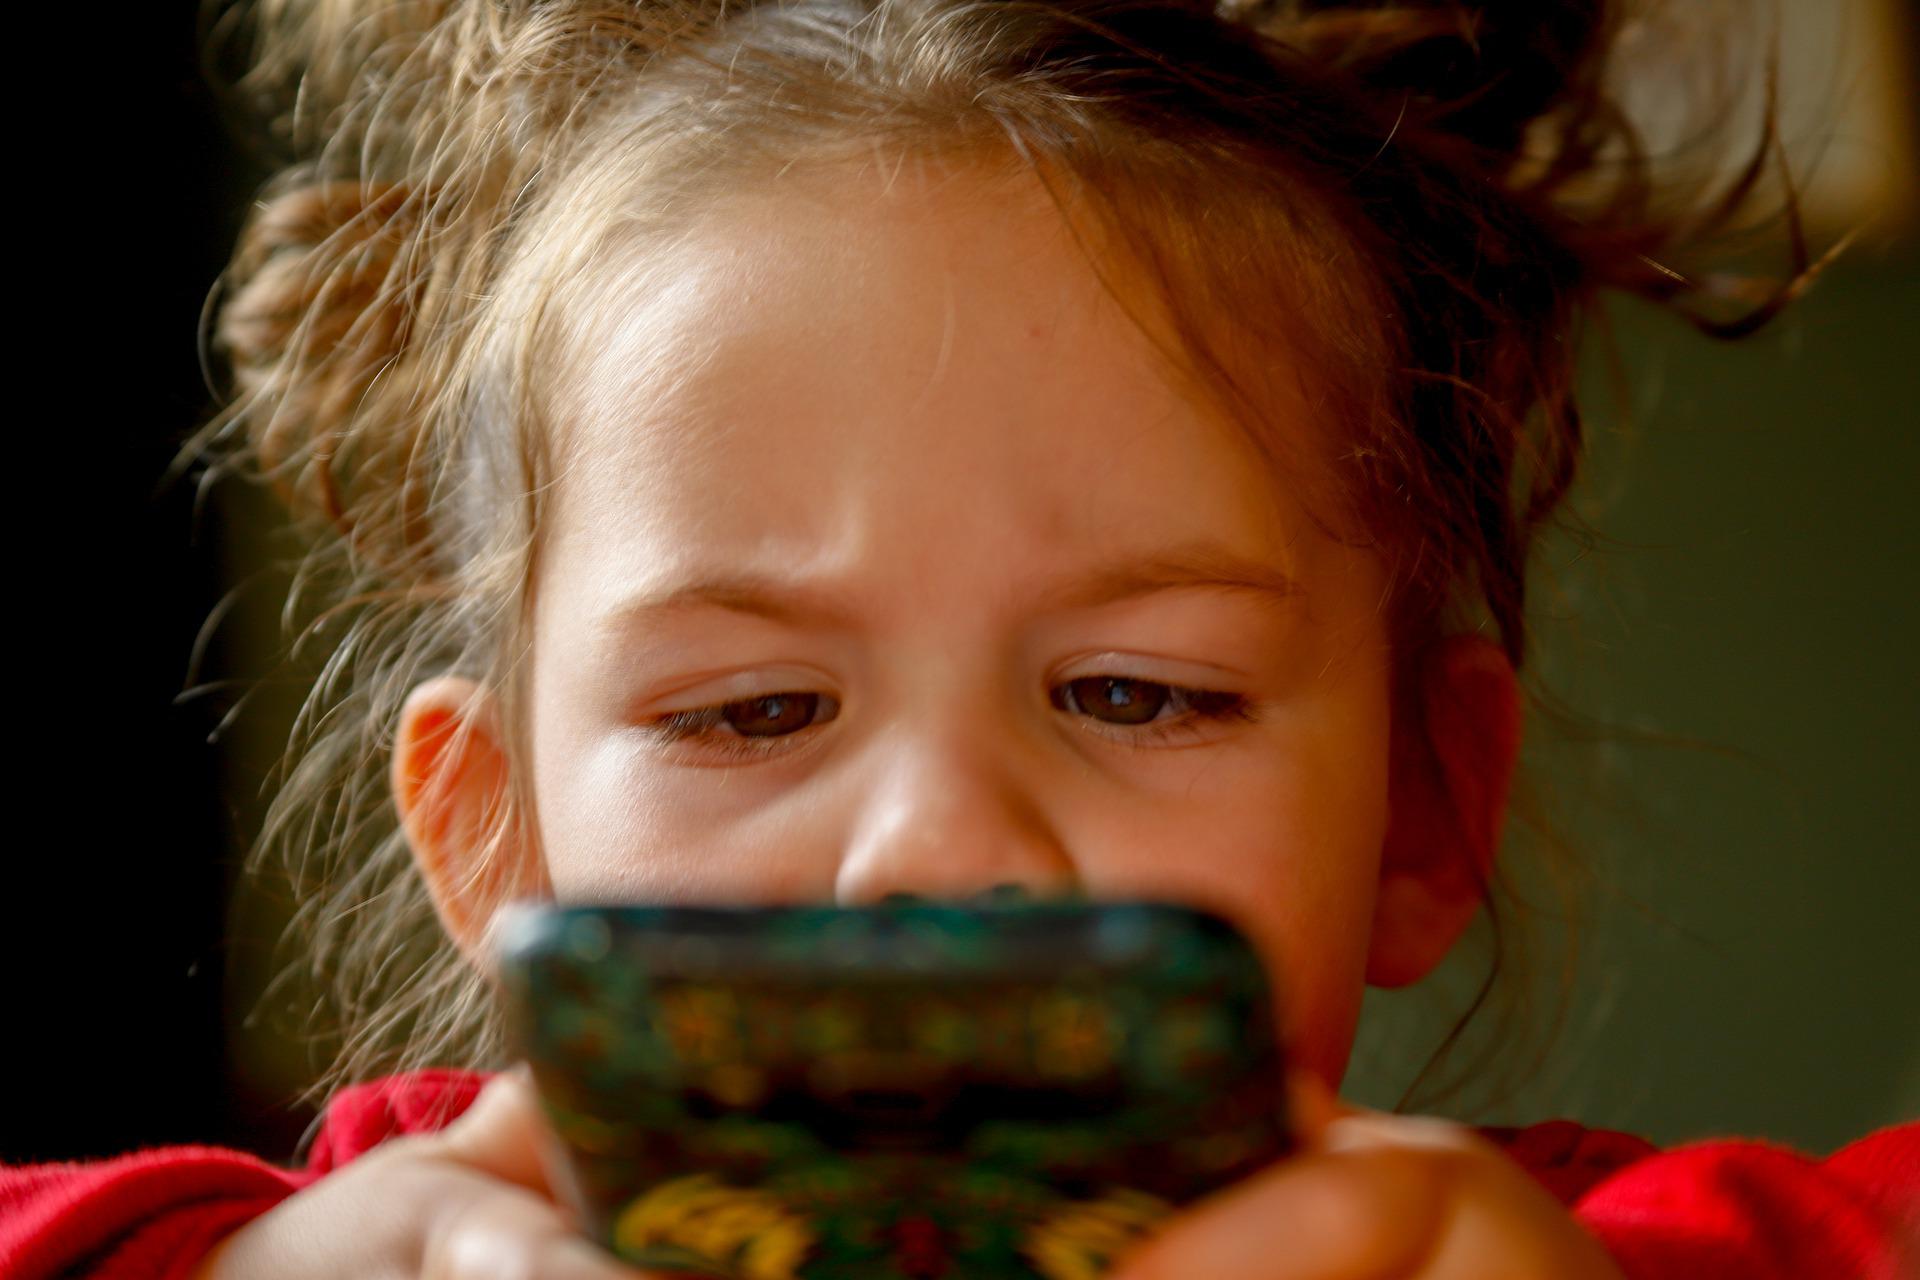 ILUSTRASI: Anak yang sering bermain gadget dengan durasi yang lama rentan terkena speech delay. (Pixabay)